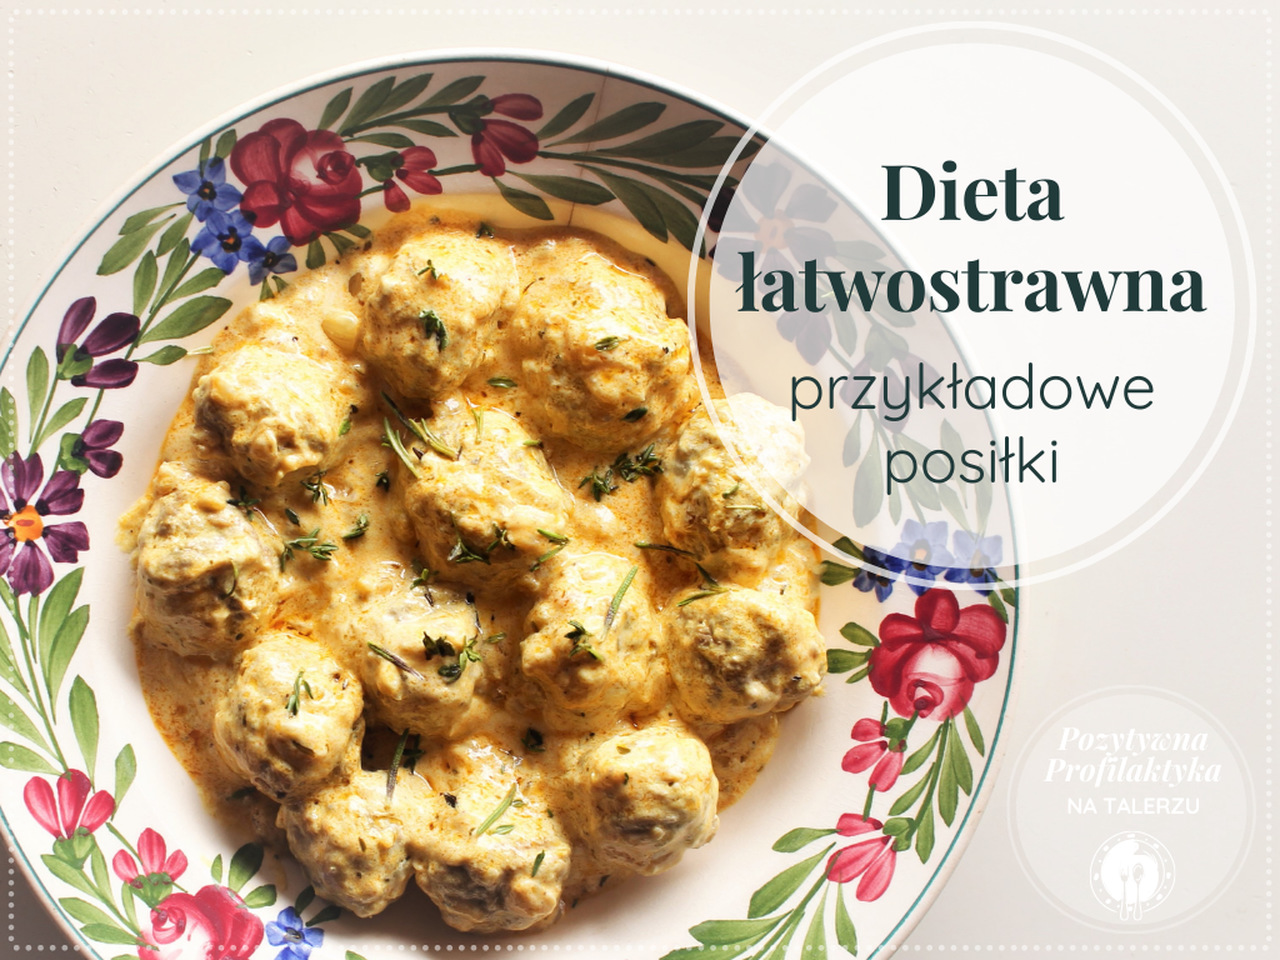 bielkadietetyk.pl » Dieta łatwostrawna (lekkostrawna) przykładowe